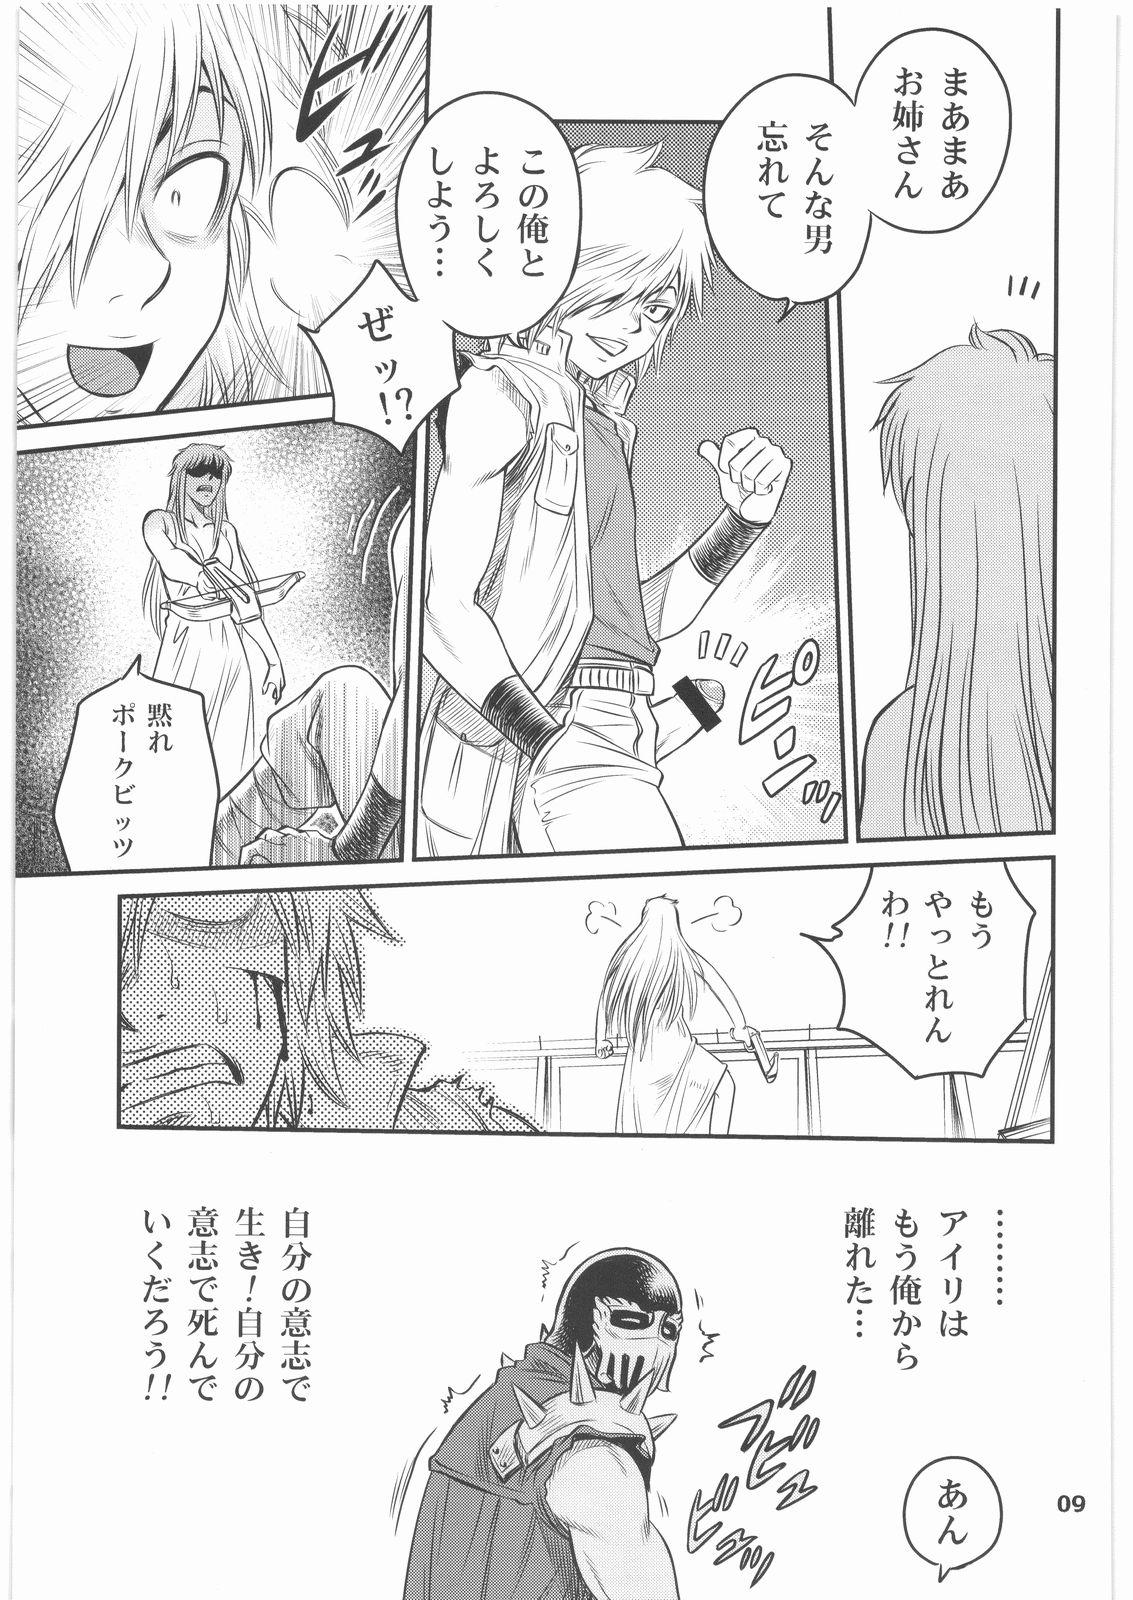 Sapphicerotica Seikimatsu Tetsu Kamen Densetsu 2 - Fist of the north star Movie - Page 8